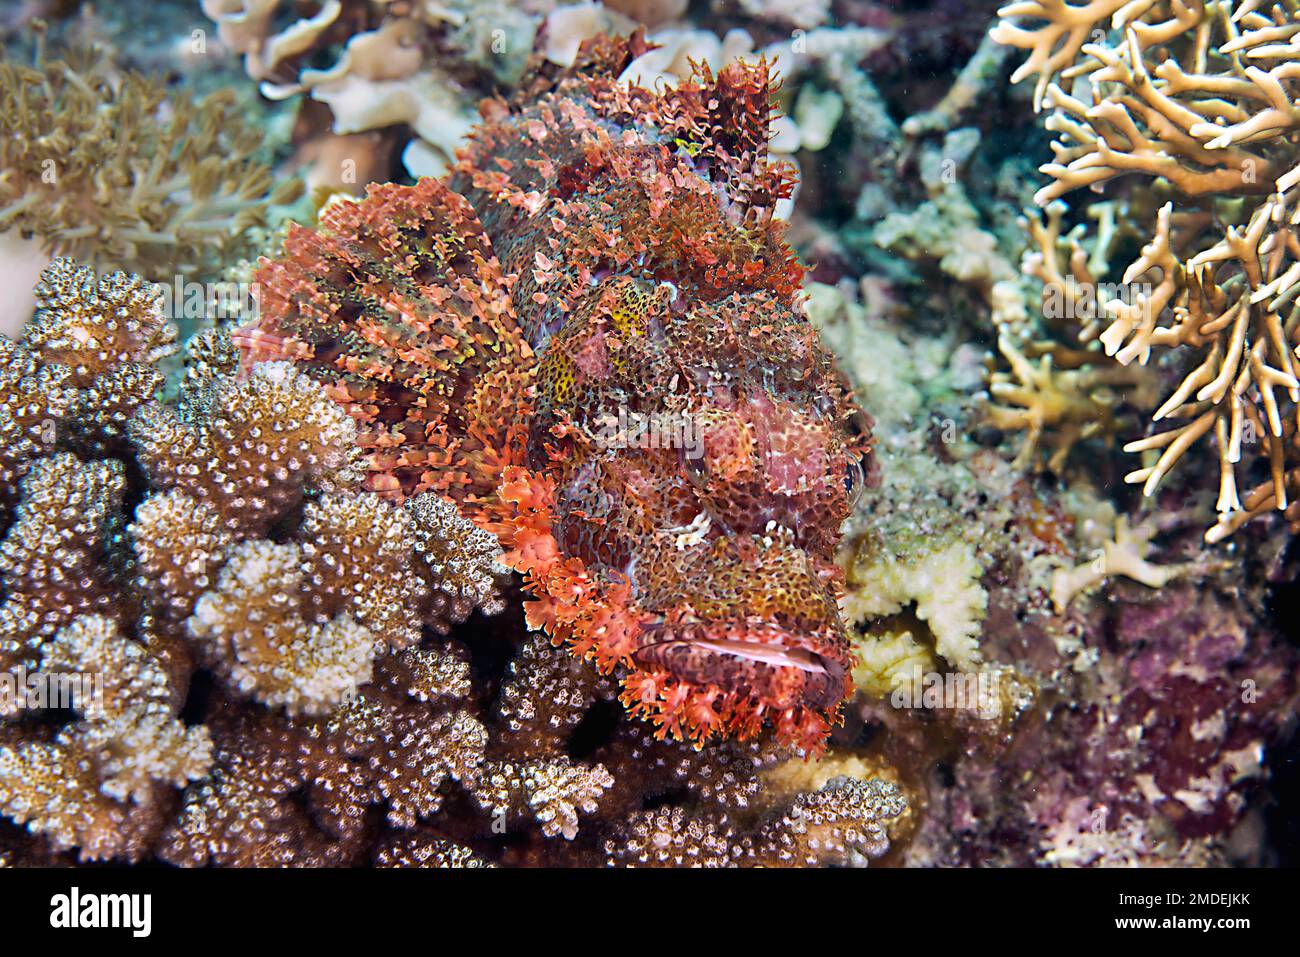 Skorpionfisch ruht auf Korallenriff Skorpionfisch ruht auf Korallenriff. Bärtiger Skorpionfisch in Jagdposition zwischen Korallen Stockfoto